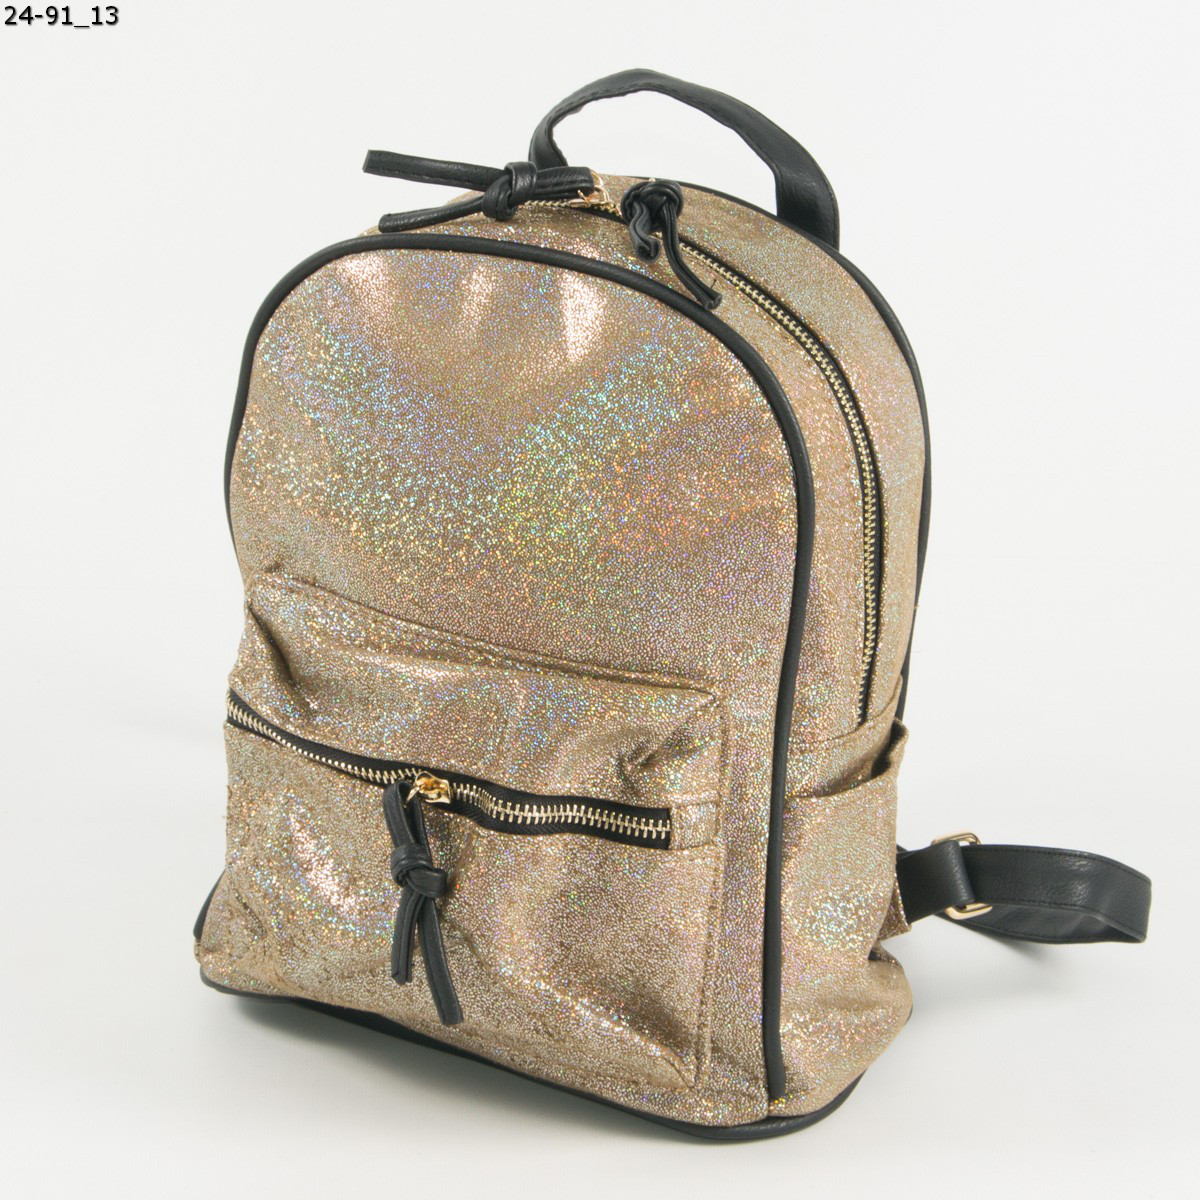 Голографічний рюкзак для прогулянок - золотистий - 24-91